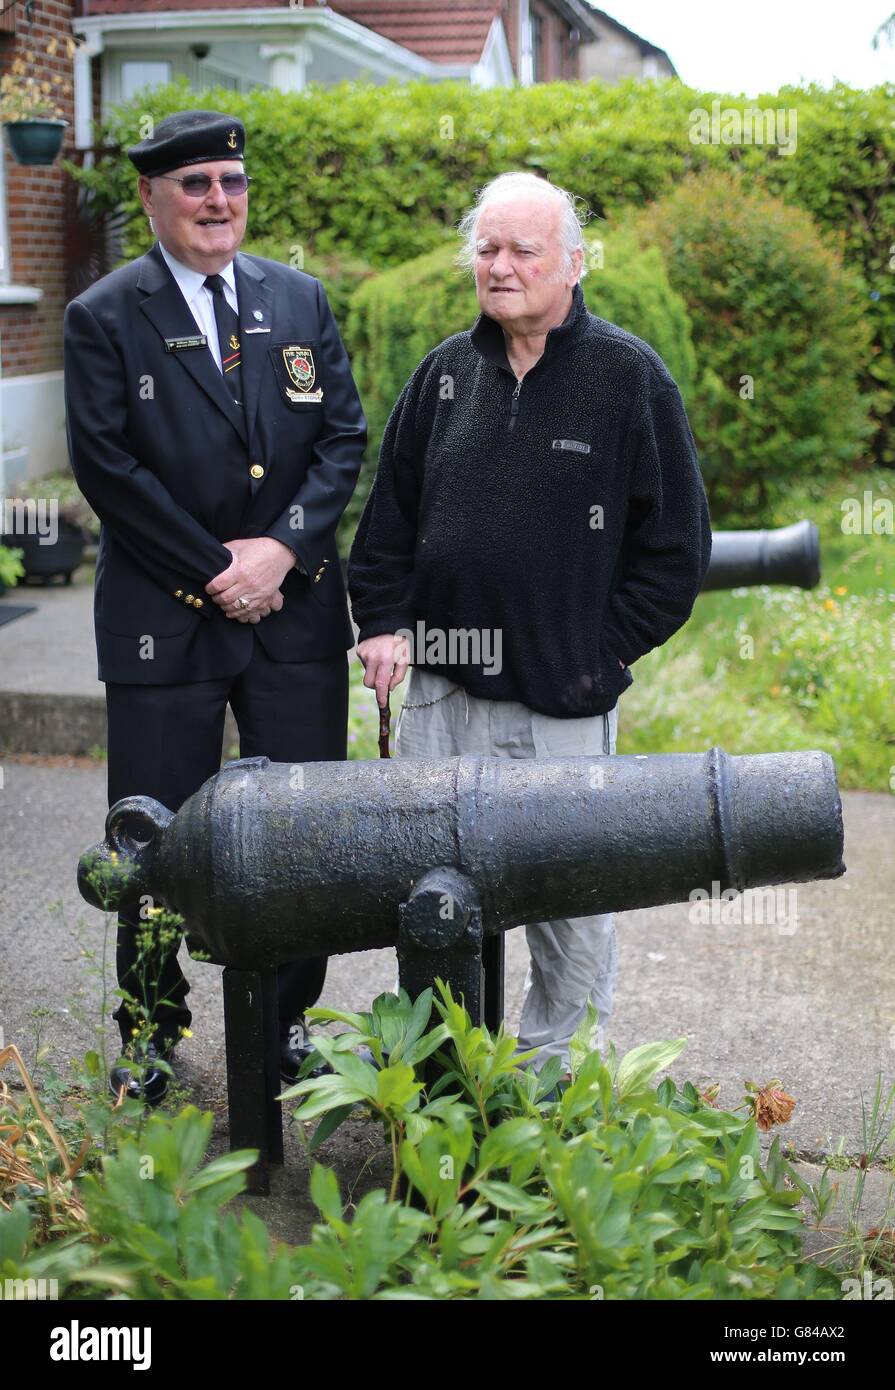 Die irischen Marine-Veteranen Pat O Mathuna (rechts) und William Mynes, die 1962 in Dublin ein Feuer auf der Le Cliona kämpften. Die Anführer der Verteidigungskräfte wurden gebeten, die Anerkennung von zwei Veteranen der Marine zu überdenken, deren Tagespur dazu beigetragen hat, mehr als 80 Menschenleben nach dem Brand im Kesselraum zu retten. Stockfoto